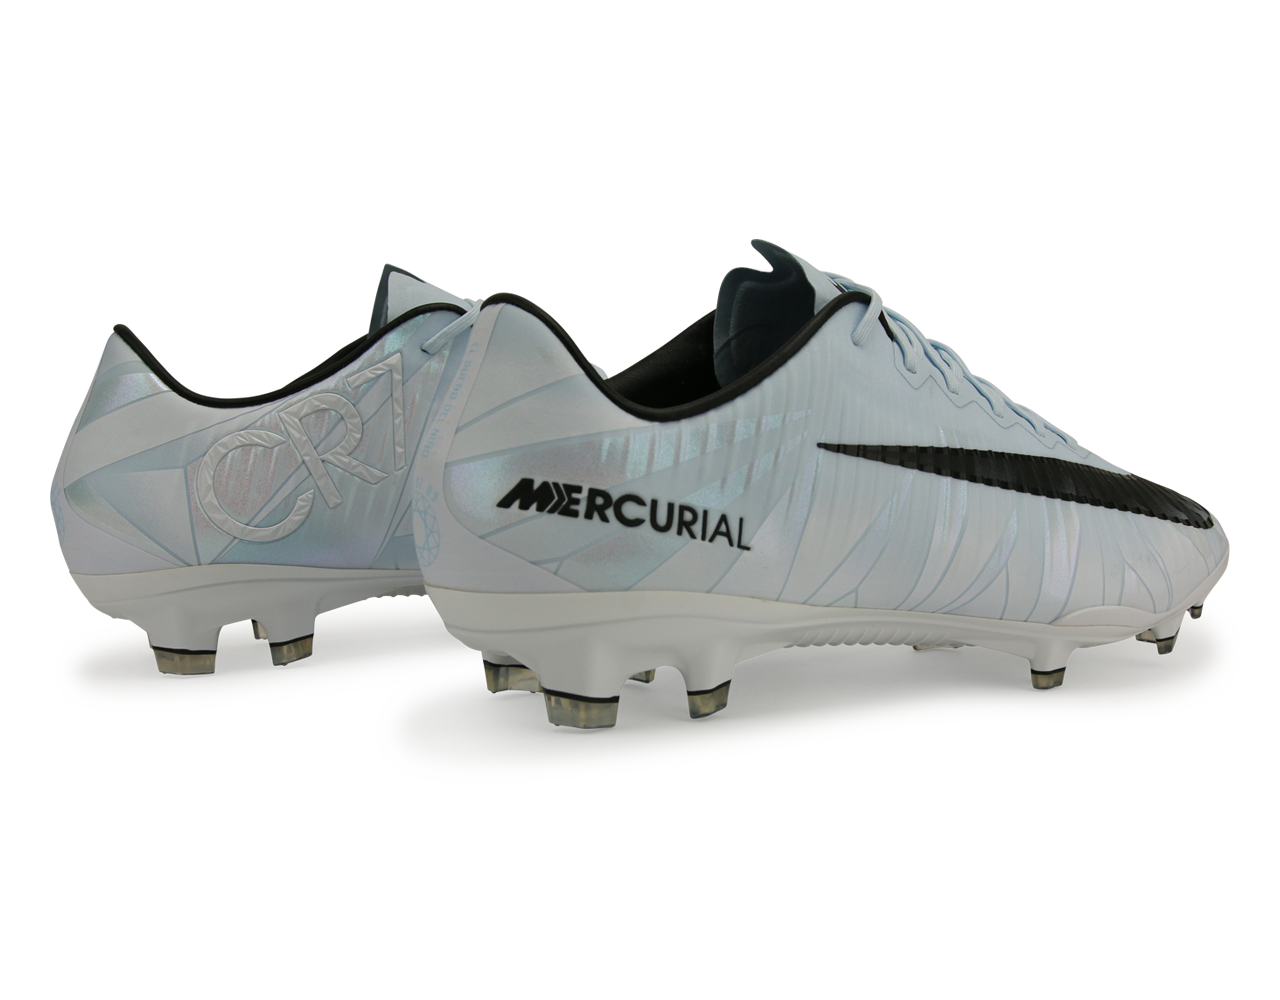 Nike Men's Mercurial Vapor XI CR7 FG Blue Tint/Black/White